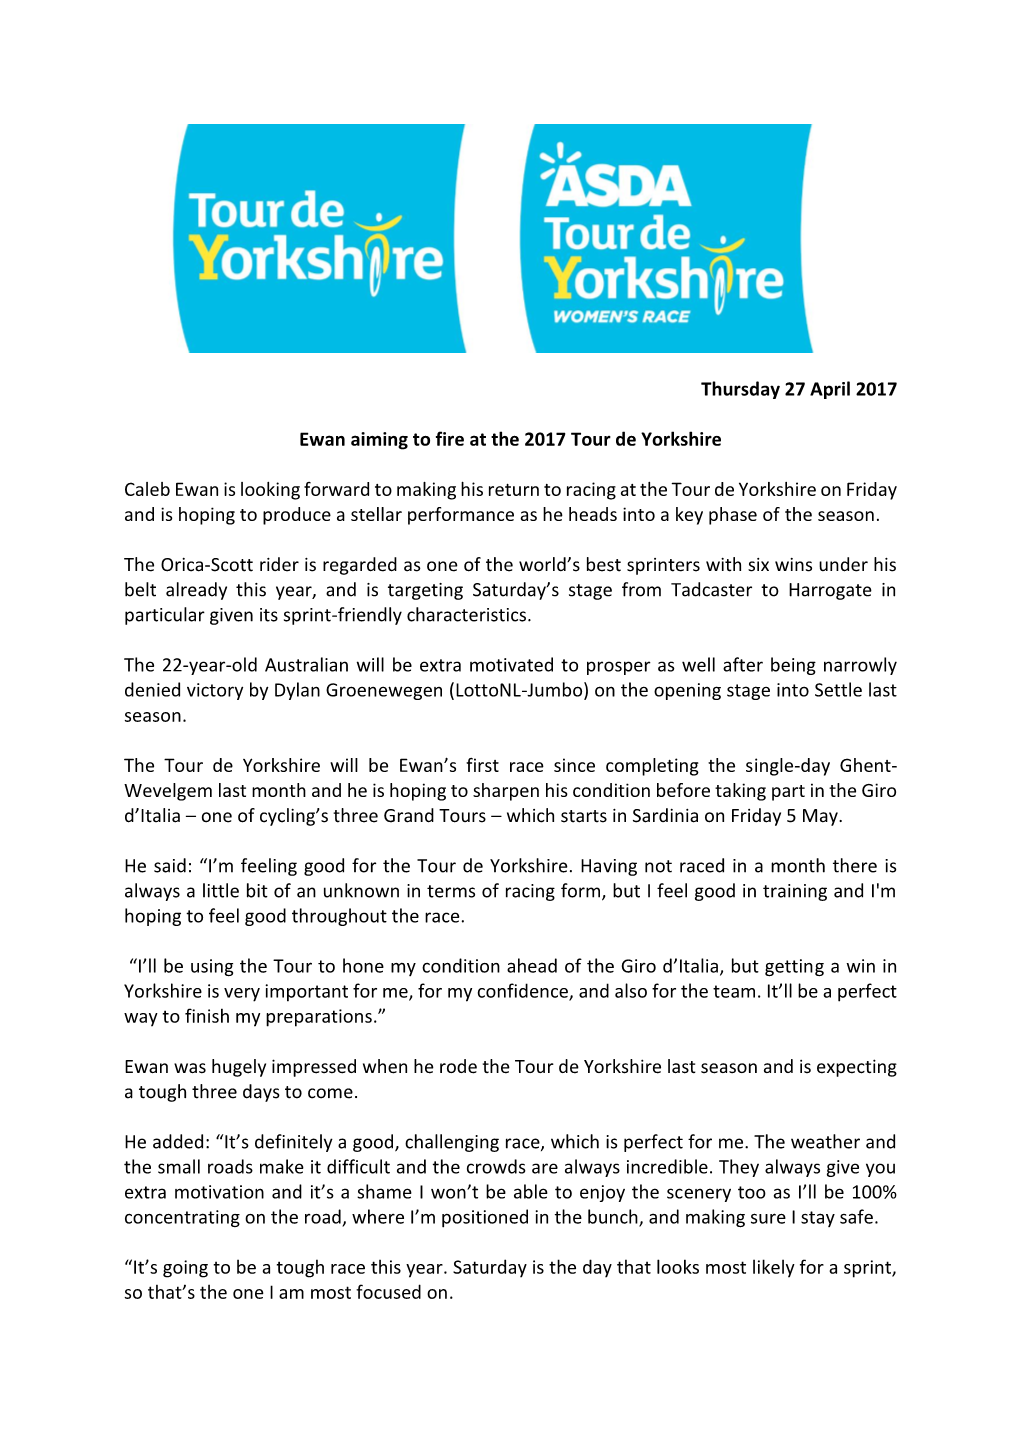 Thursday 27 April 2017 Ewan Aiming to Fire at the 2017 Tour De Yorkshire